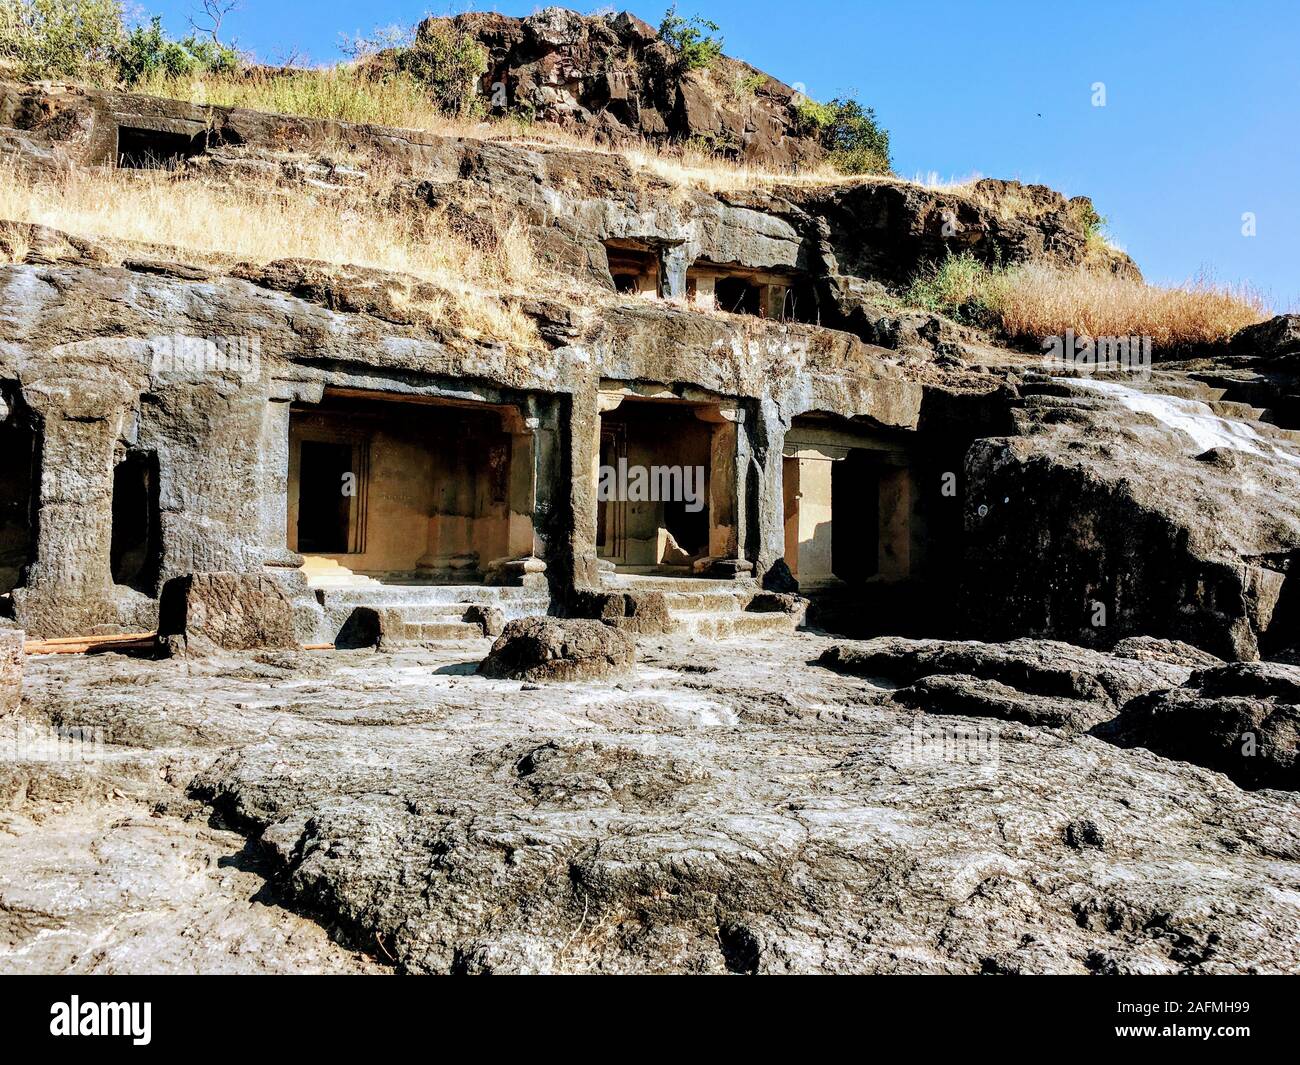 Ajanta Höhlen sind 30 Rock-cut buddhistische Höhle Denkmäler aus dem 2. Jahrhundert v. Chr. bis etwa 480 CE im Aurangabad in Maharashtra in Indien. Stockfoto